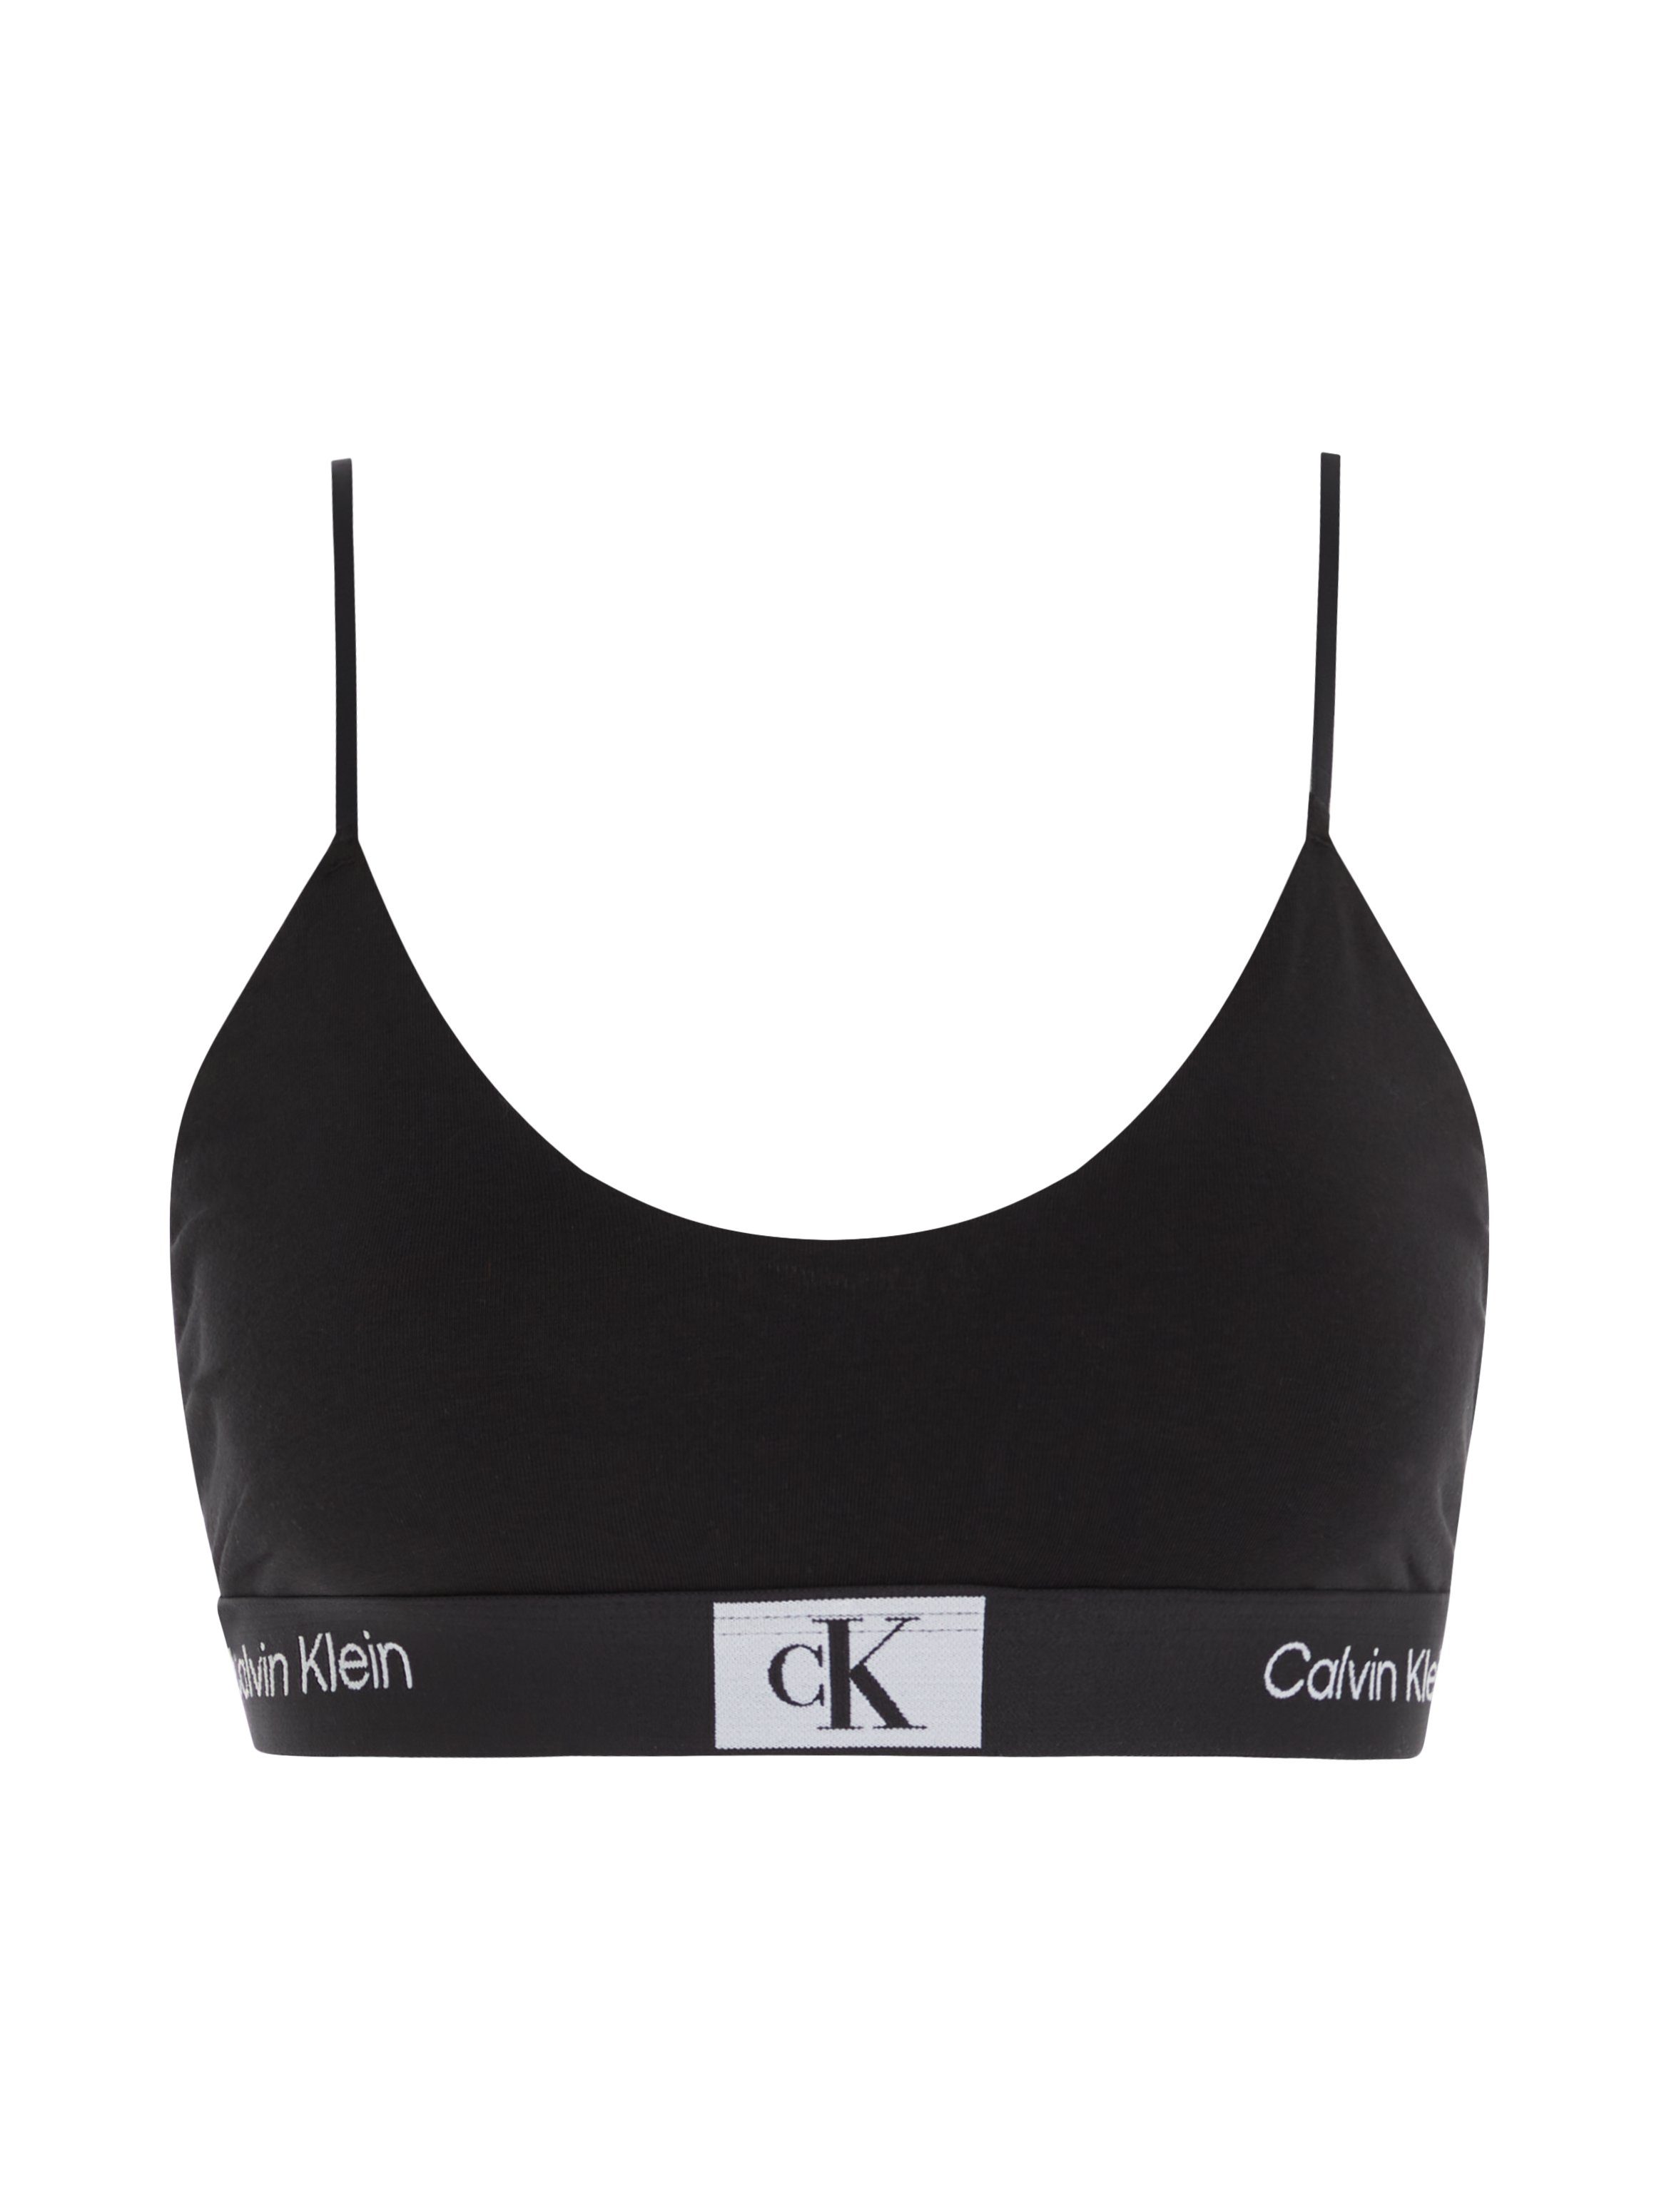 UNLINED Bralette-BH Calvin BLACK mit Alloverprint BRALETTE Underwear Klein